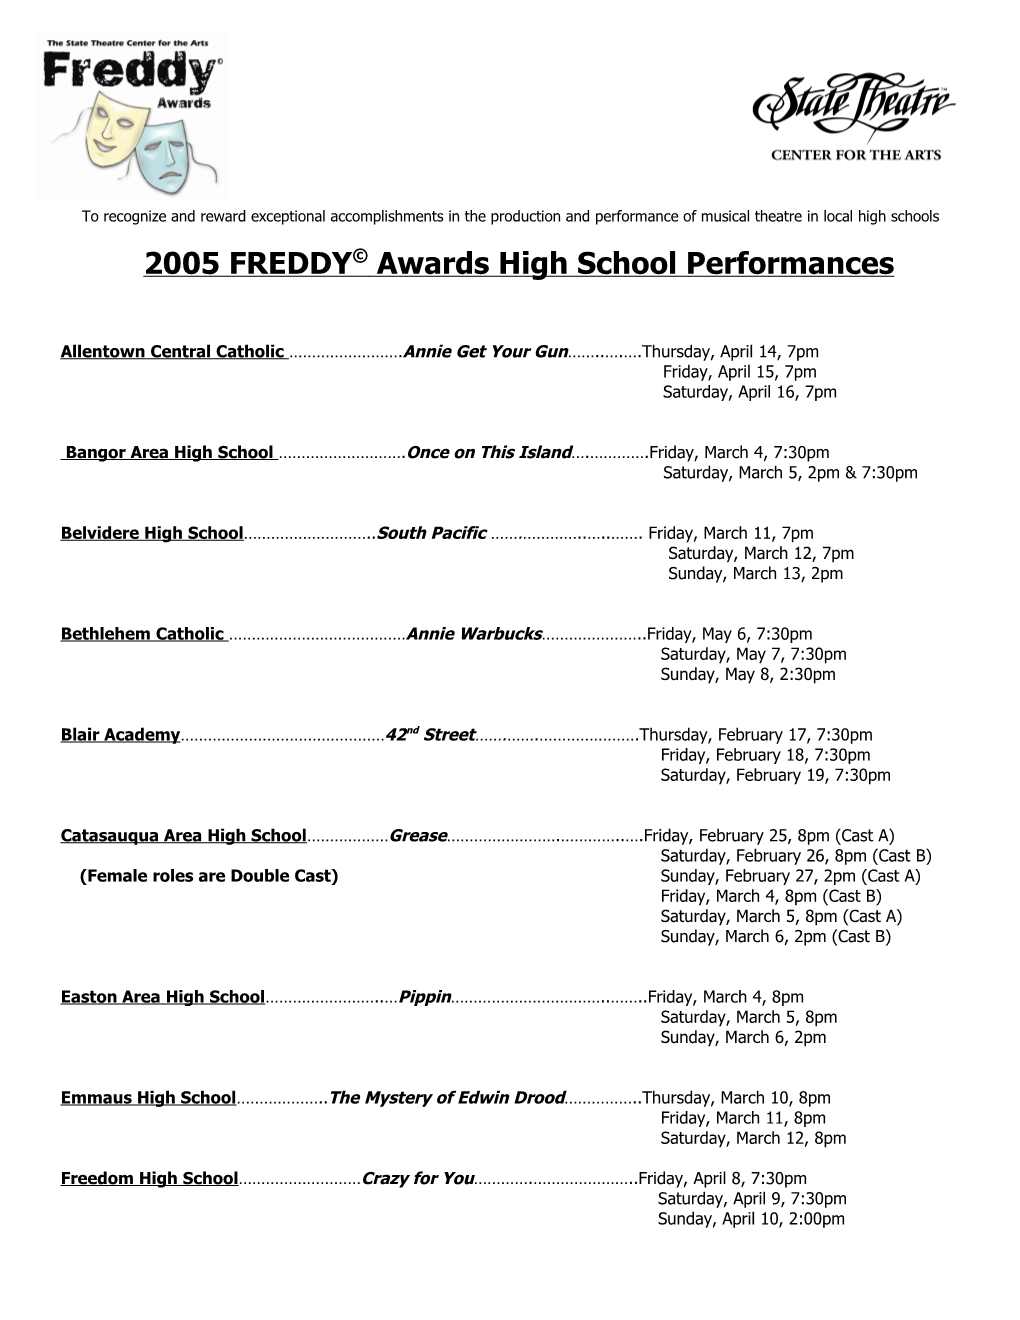 2005 FREDDY© Awards High School Performances